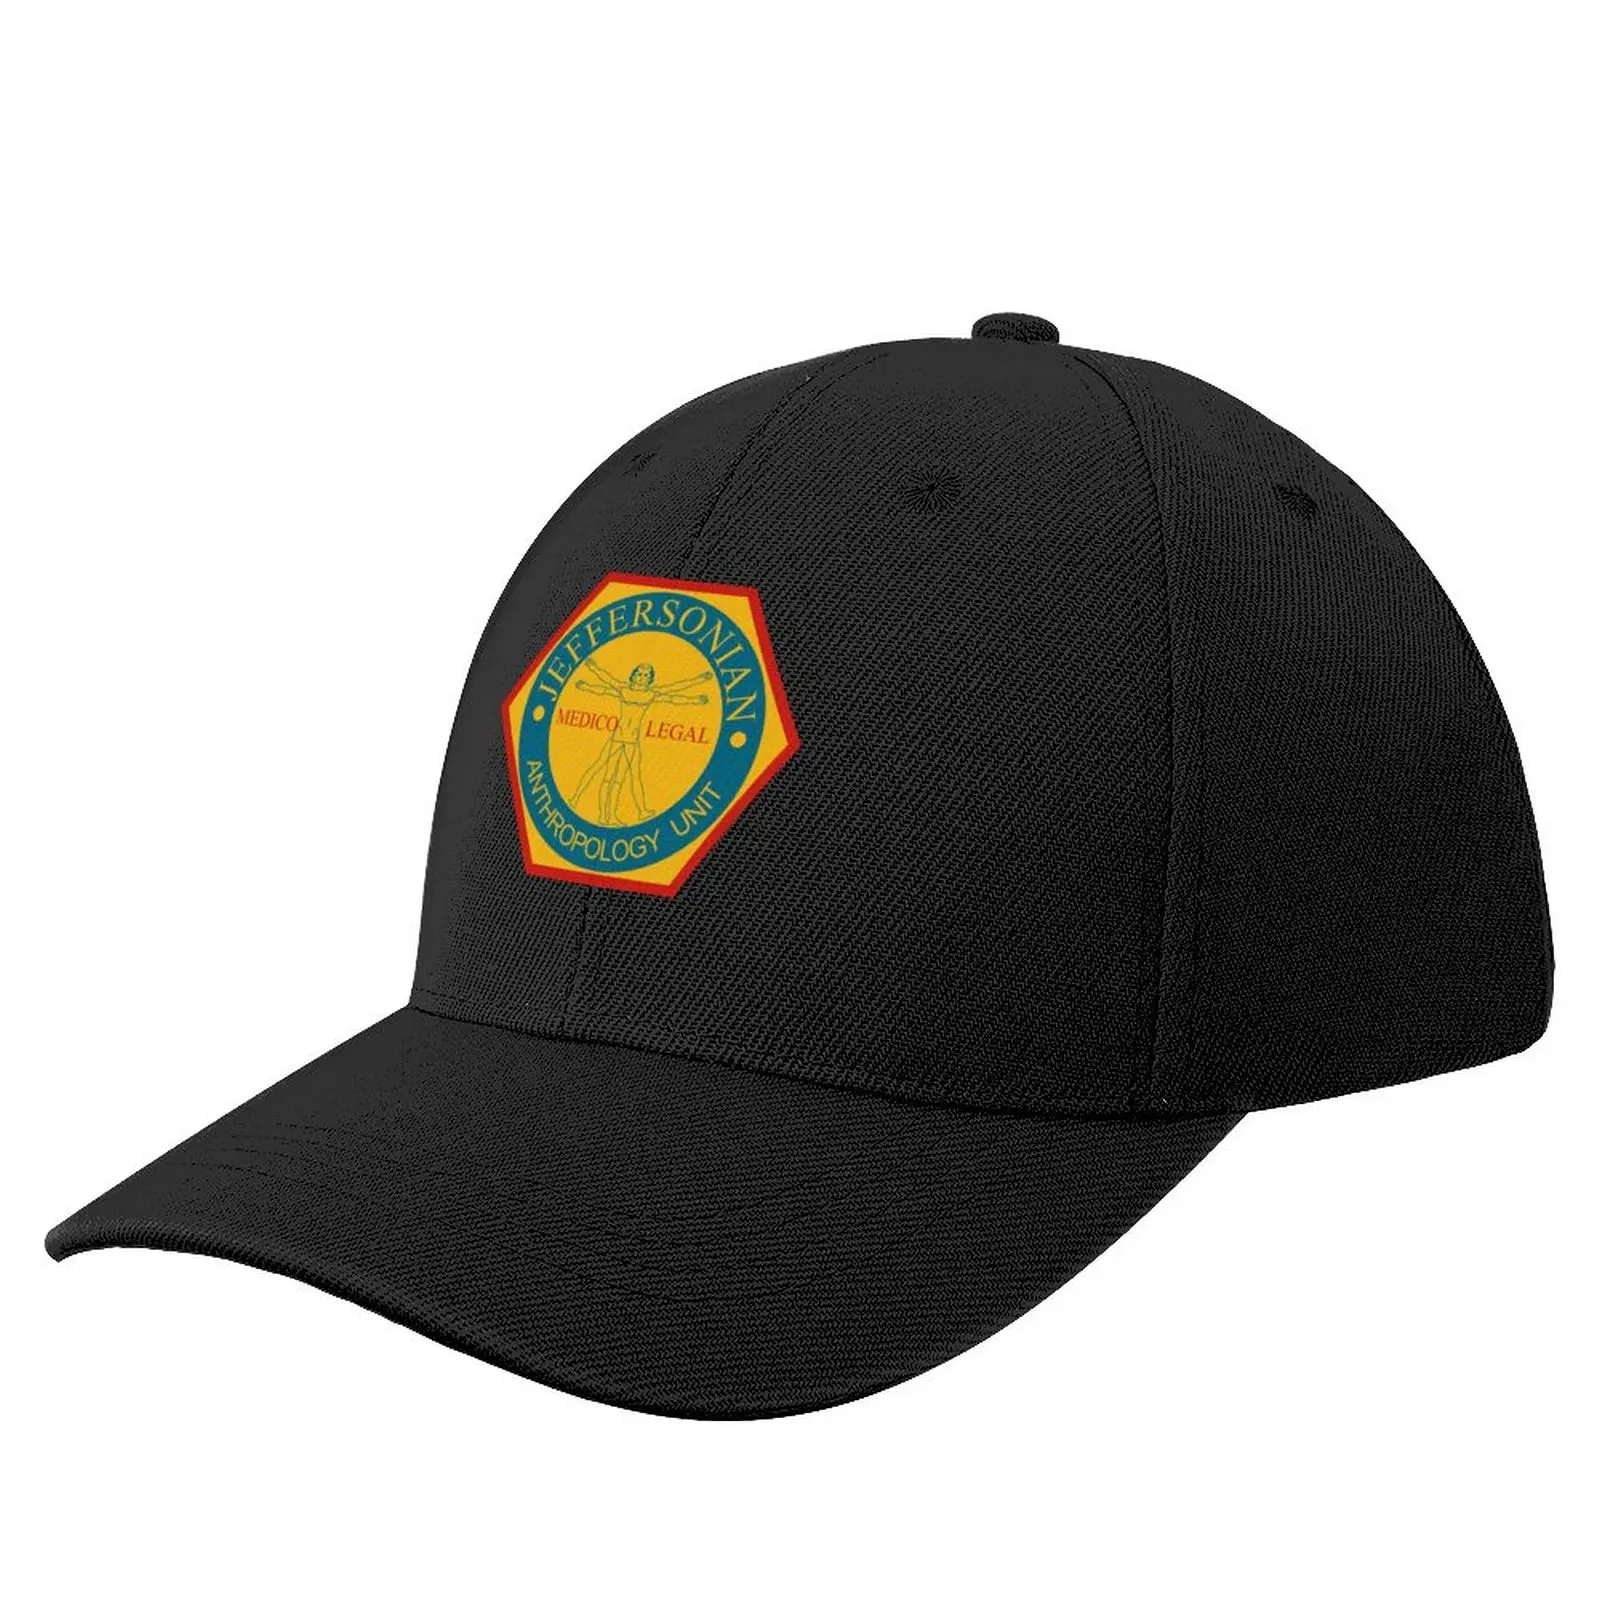 

Бейсболка с логотипом института Джефферсона BONES, индивидуальная Кепка, роскошные Брендовые мужские кепки